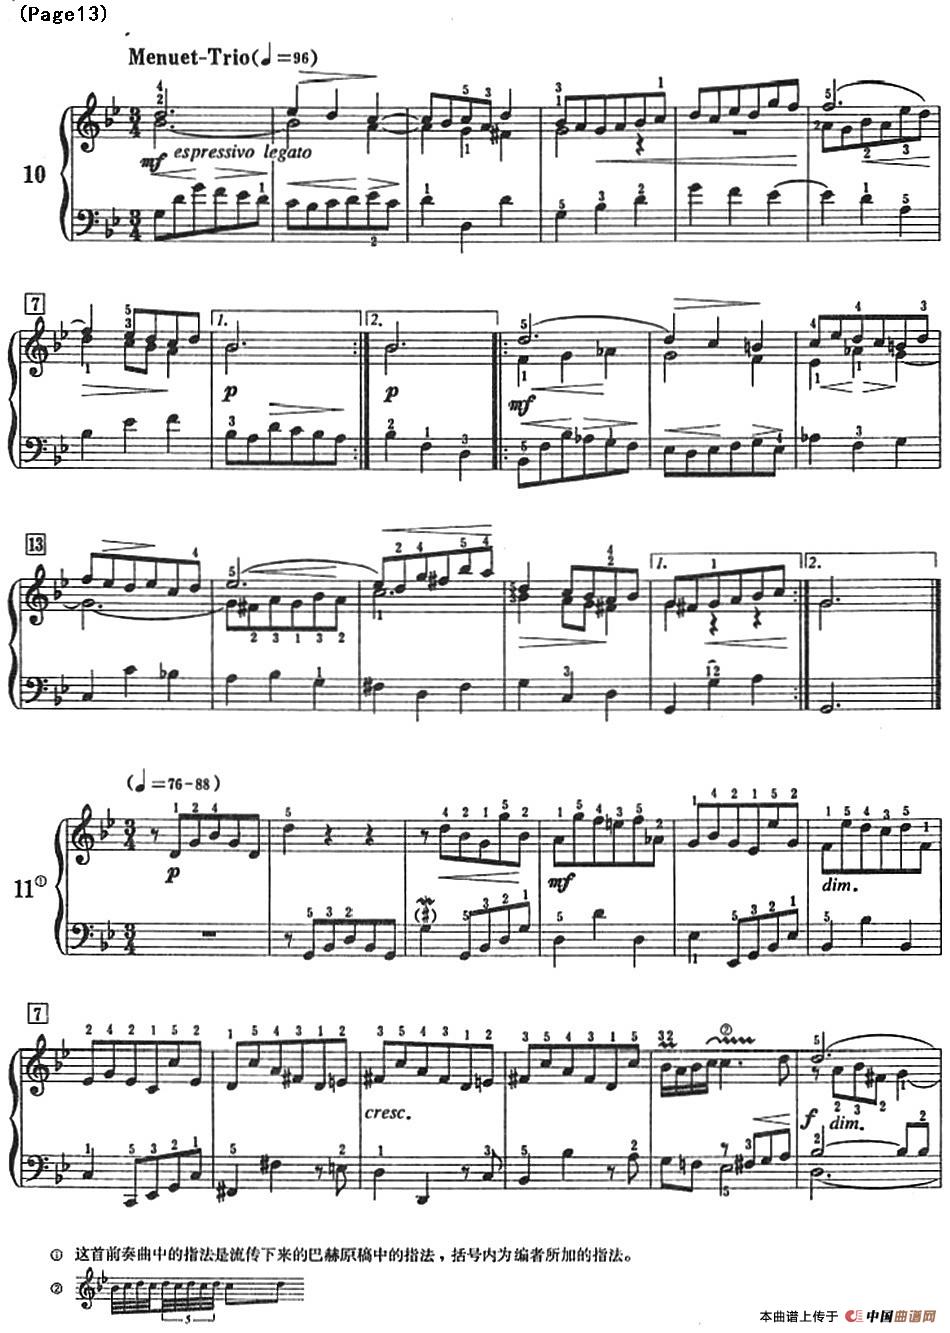 巴赫小前奏曲（NO.9-NO.12）(1)_Bach Little Prelude and Fugue_页面_18.jpg